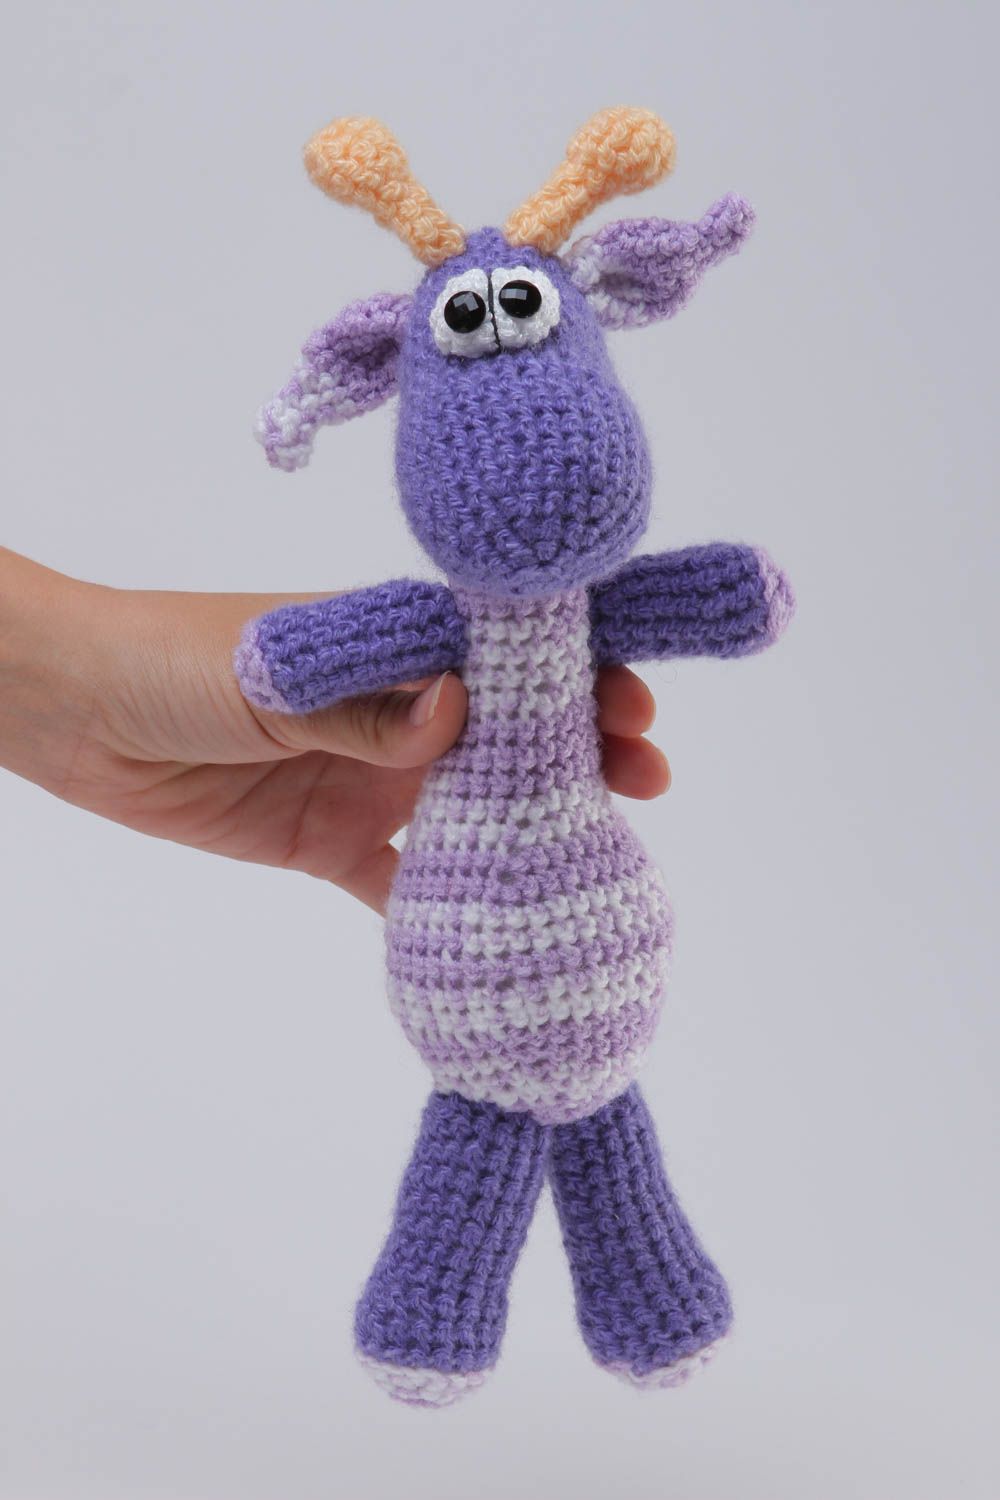 Funny handmade soft toy crochet toy childrens toys birthday gift ideas photo 5